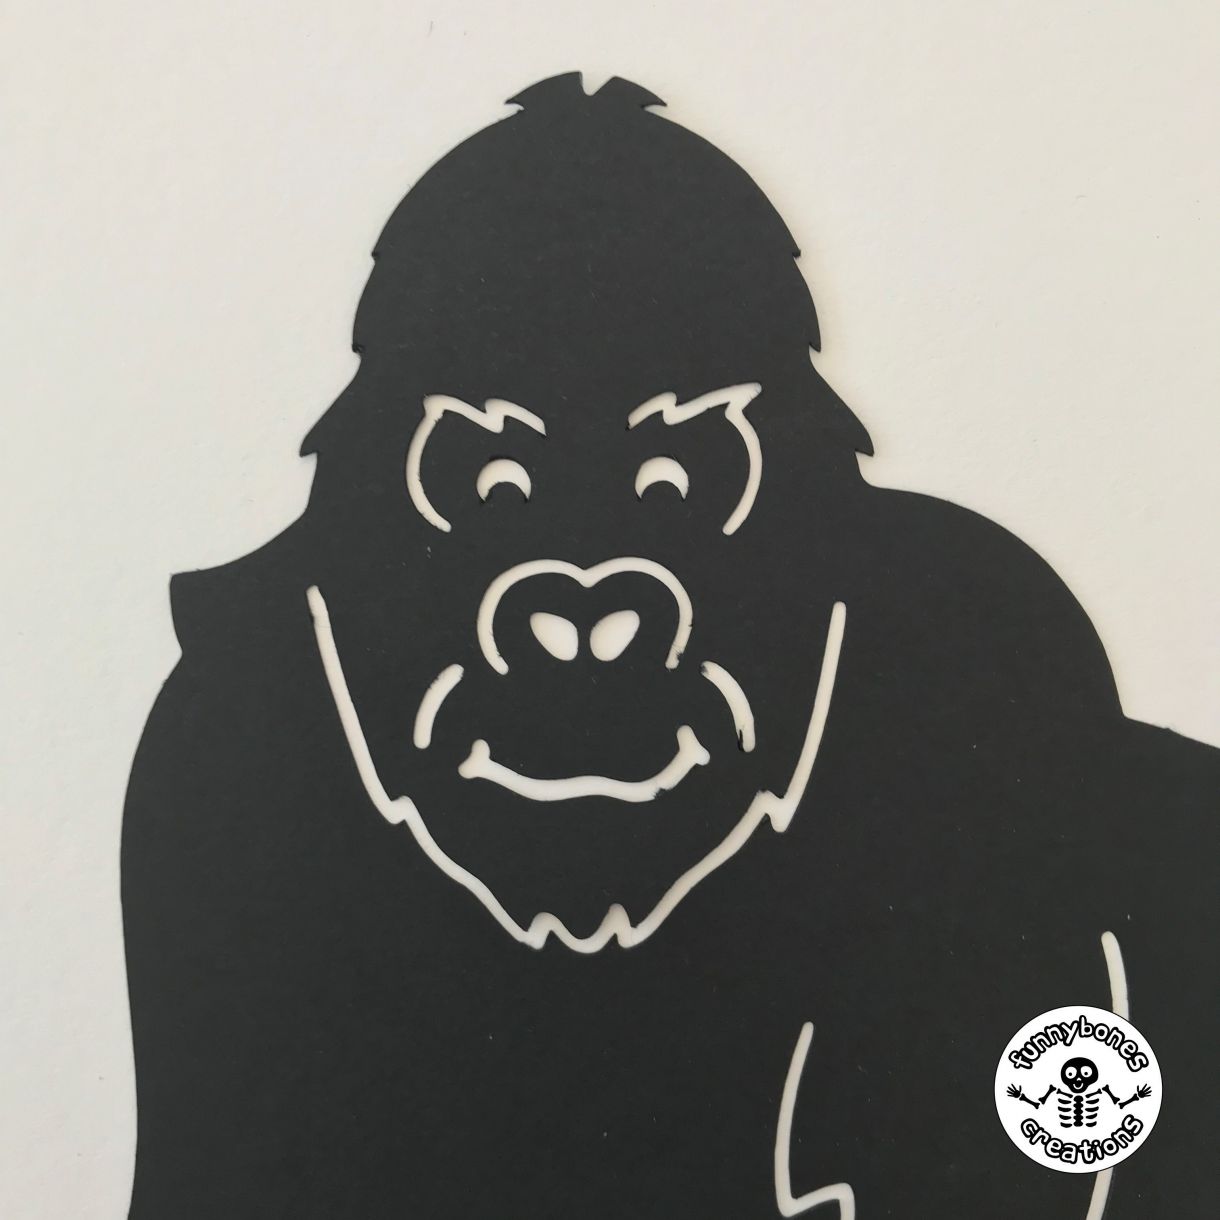 Paper gorilla